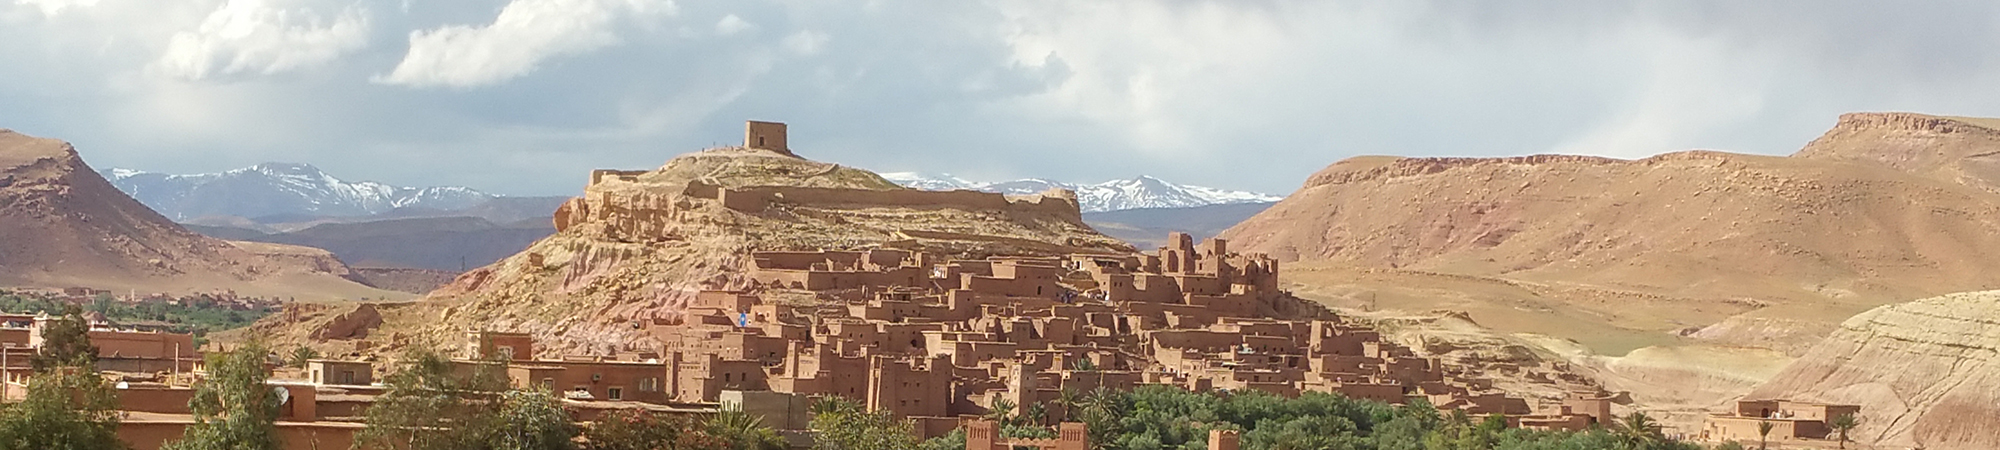 high desert in morocco